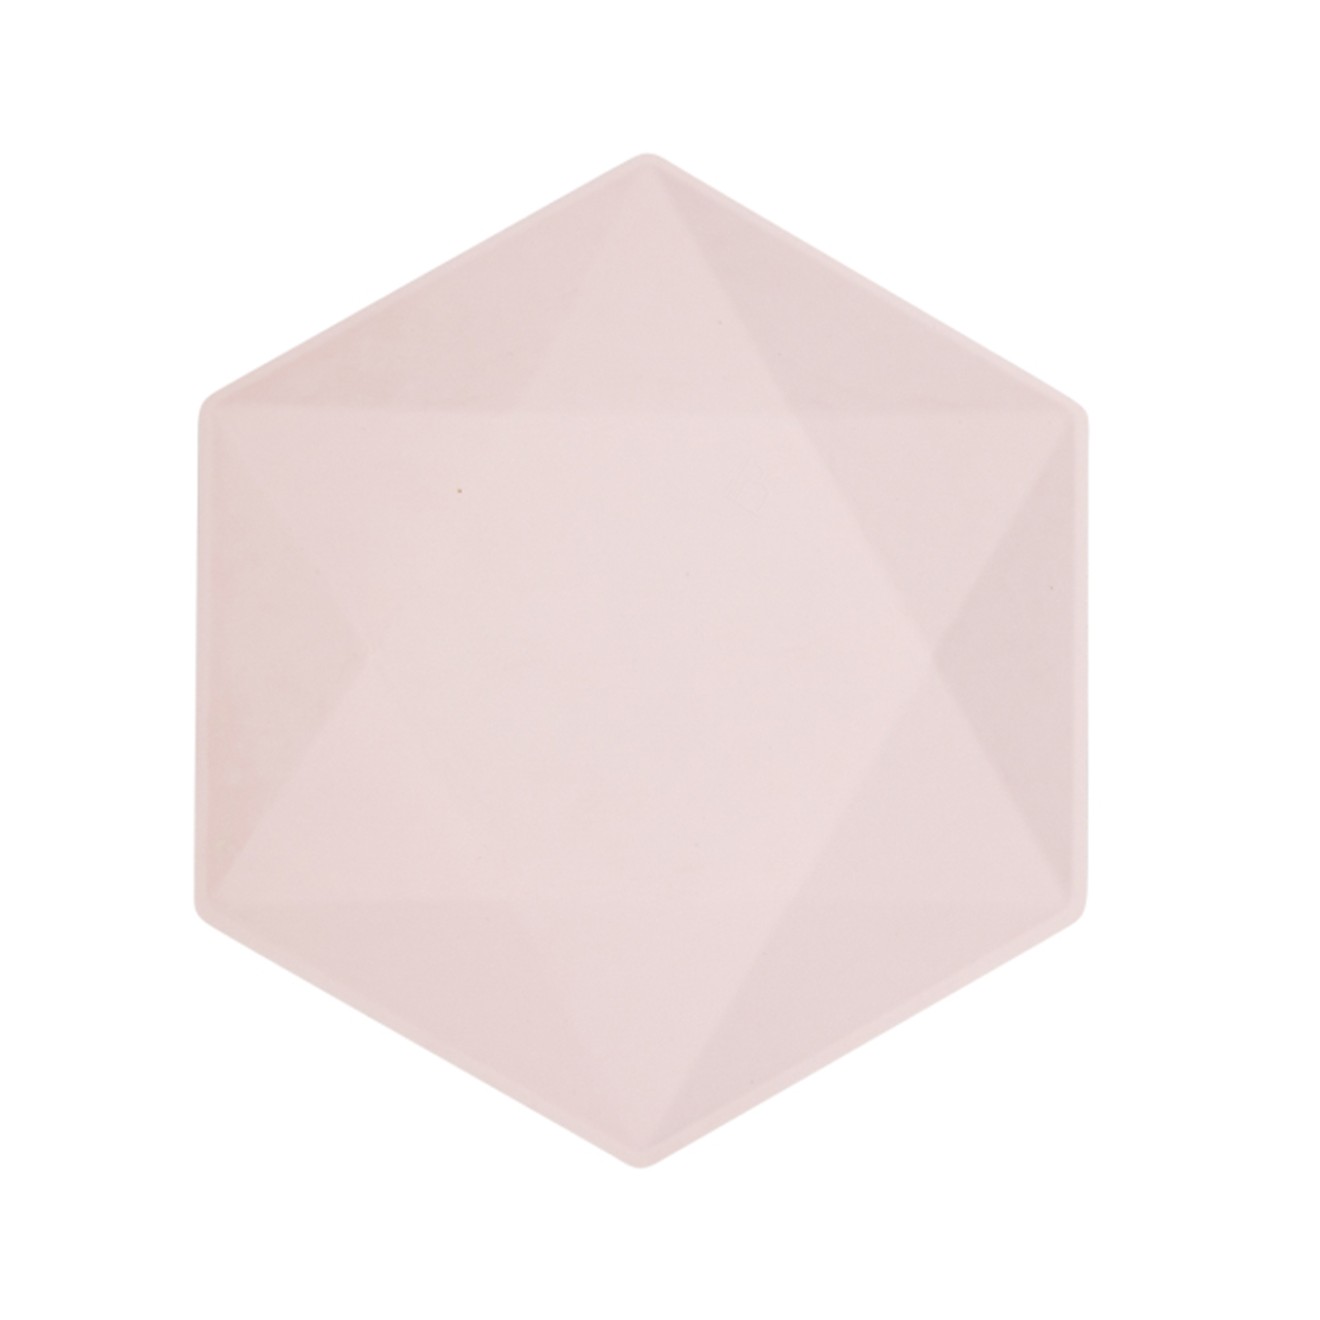 6 Partyteller XL - Hexagonal - pink